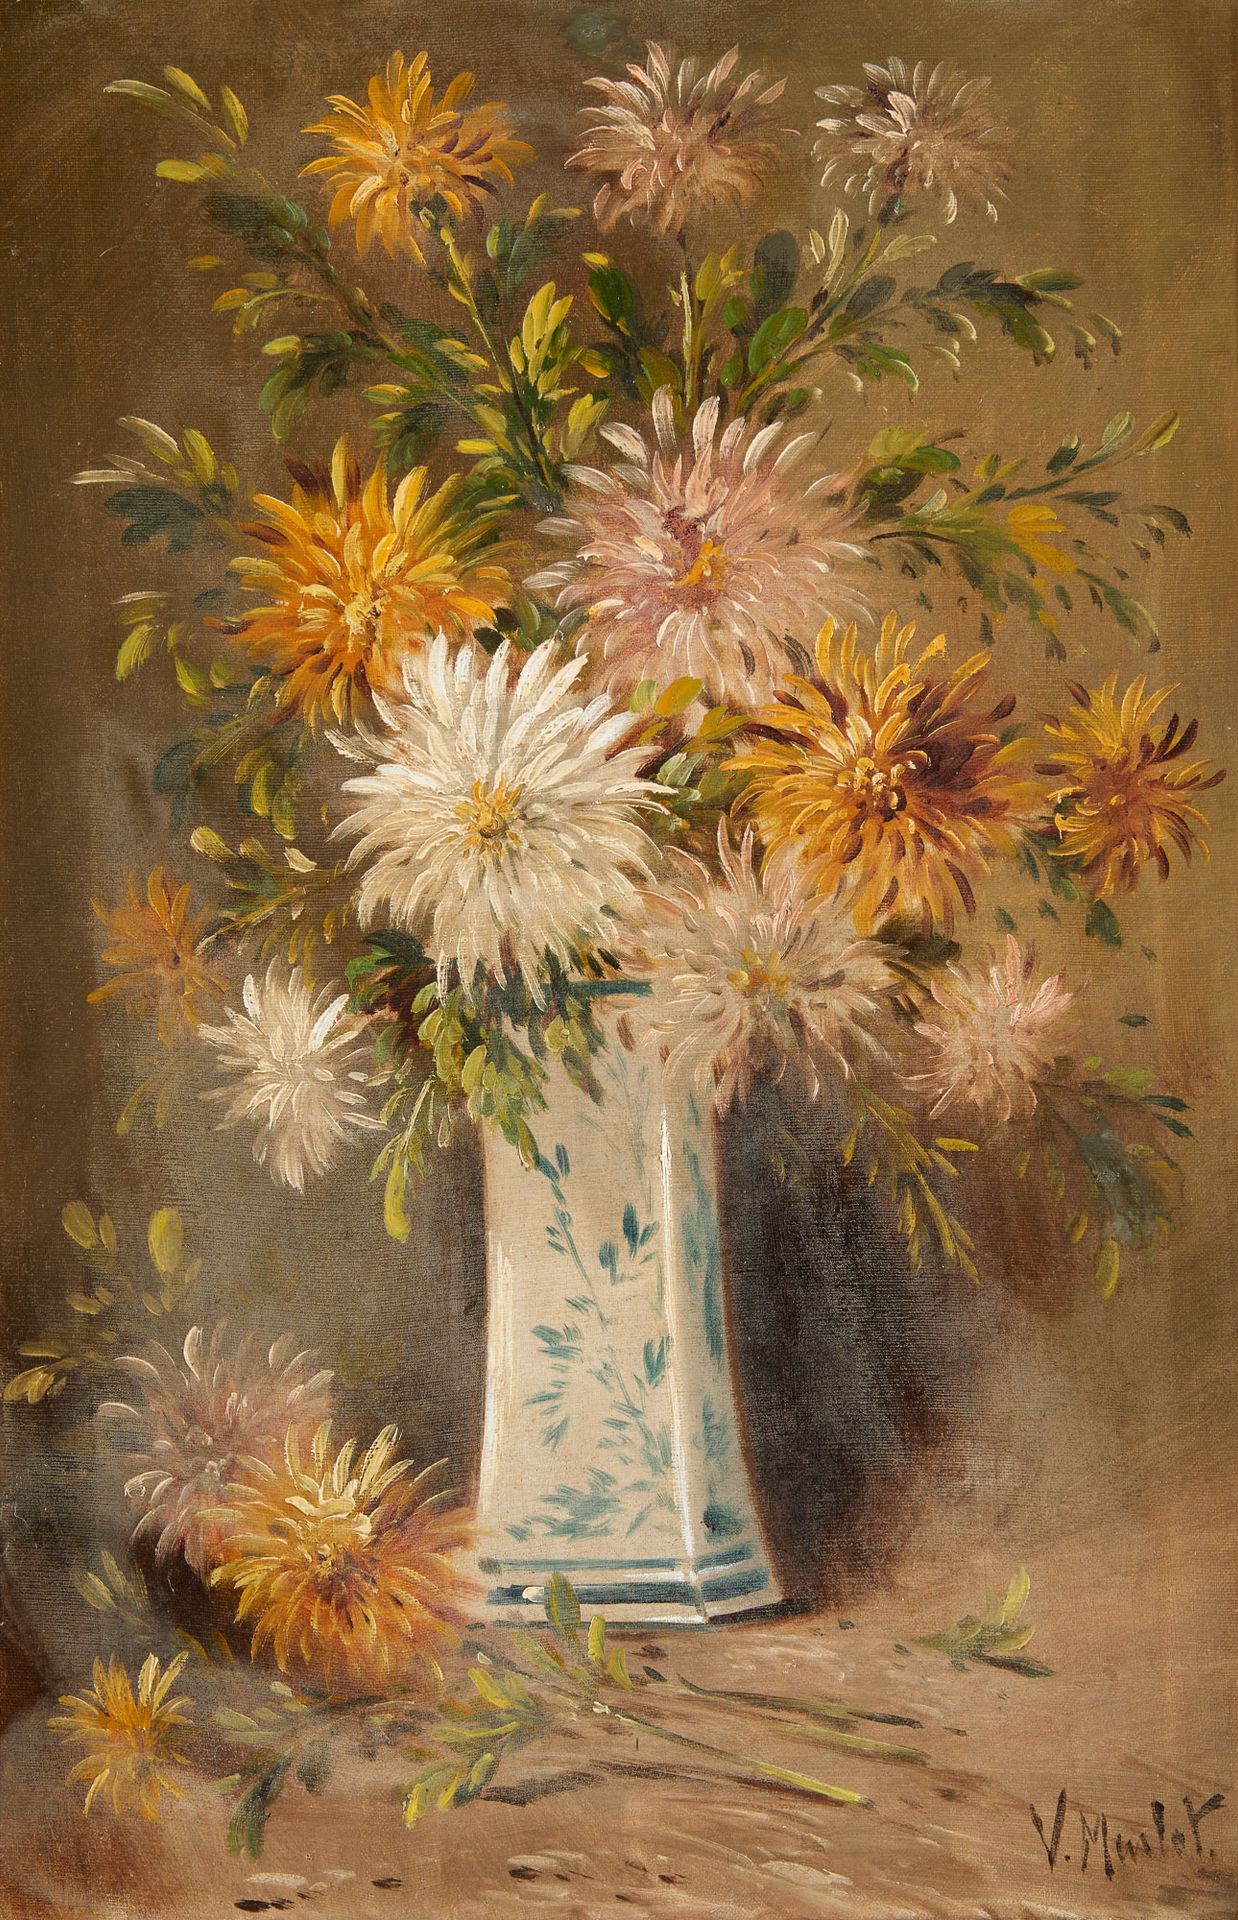 Henry SCHOUTEN École belge (1857/64-1927) 布面油画：盛开的花瓶。

签名：V. Mulot，别名Henry Schou&hellip;